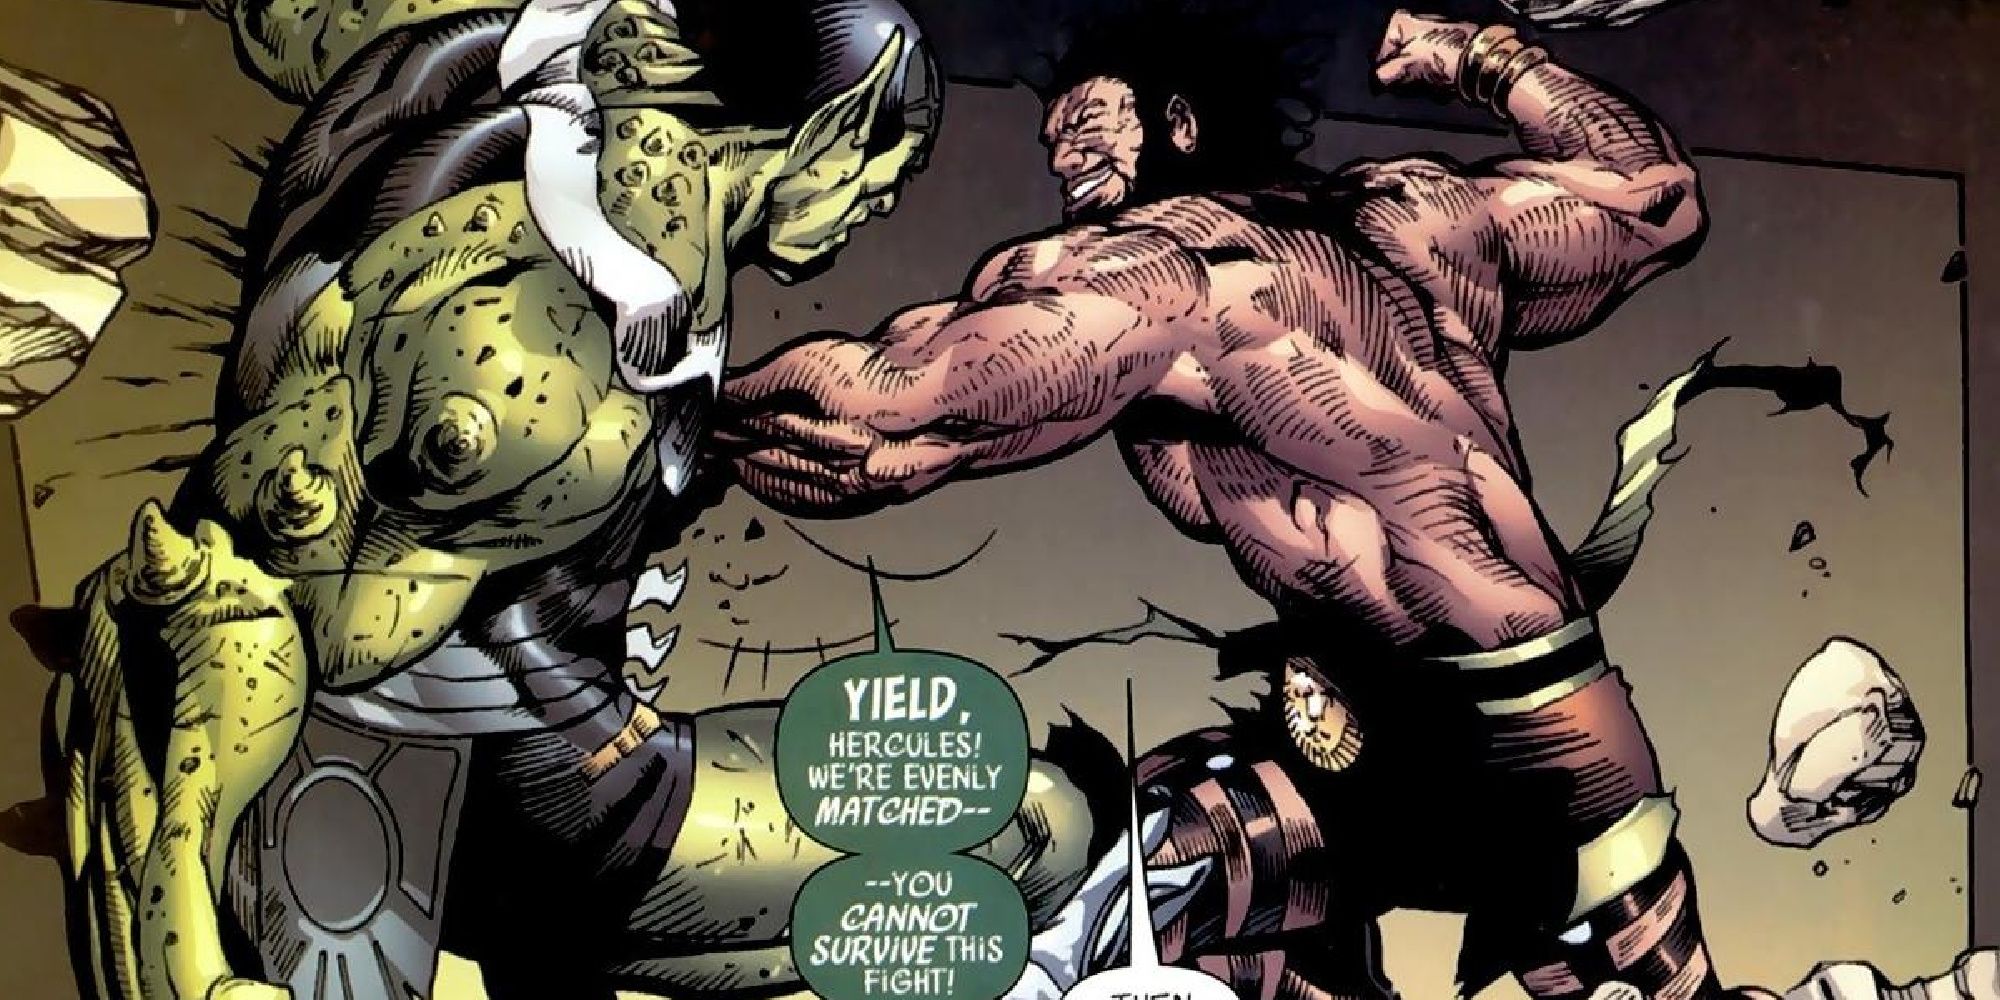 Klybn fights Hercules in Marvel Comics.